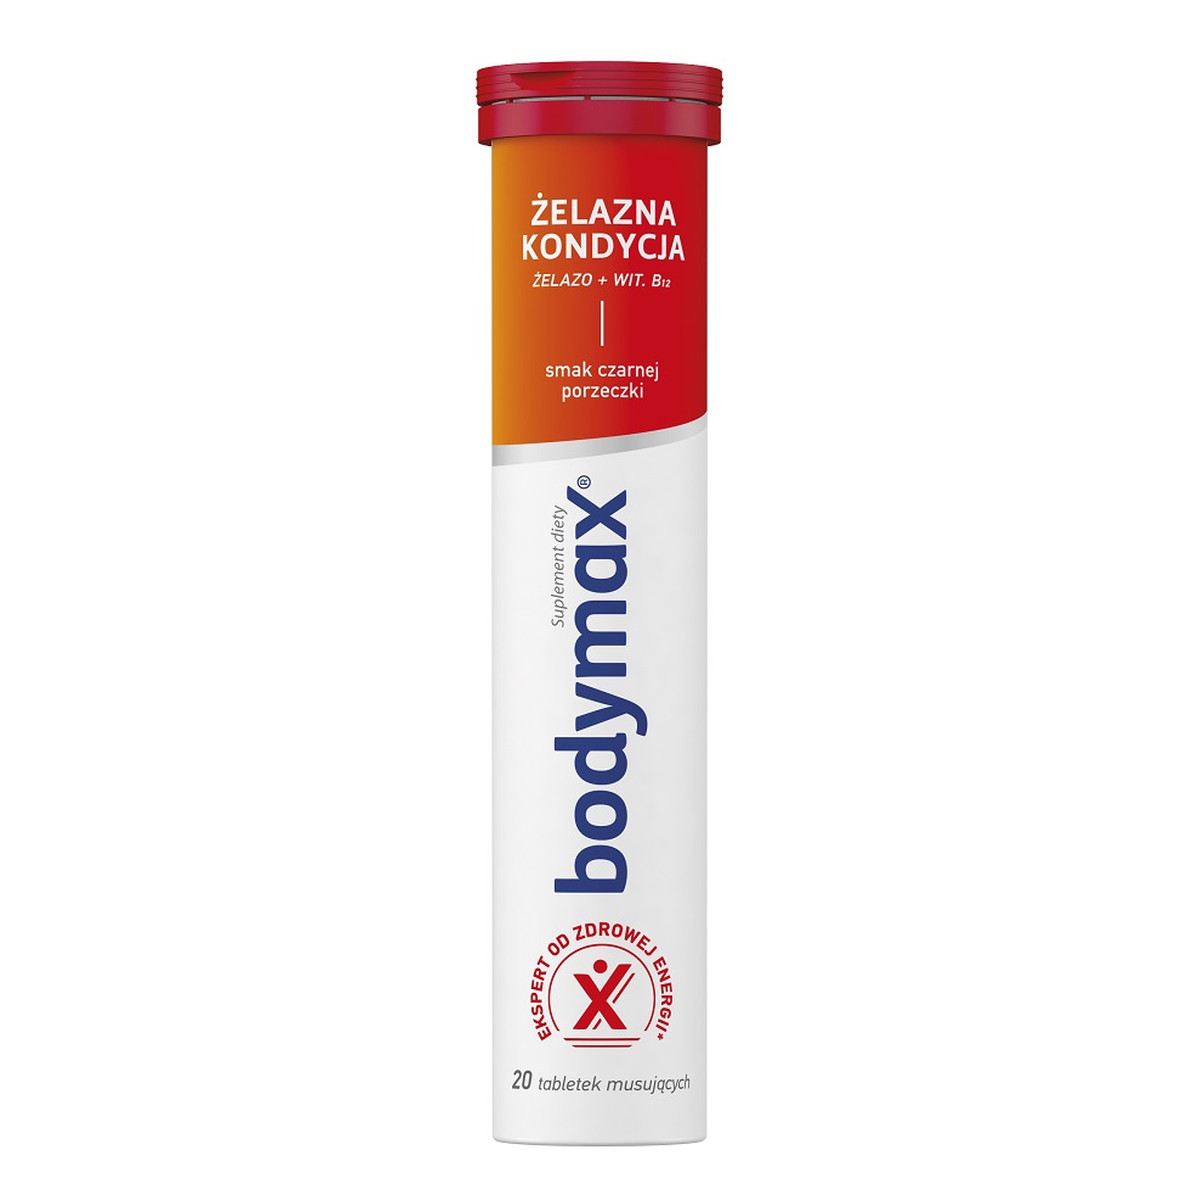 Bodymax Żelazna kondycja suplement diety 20 tabletek musujących